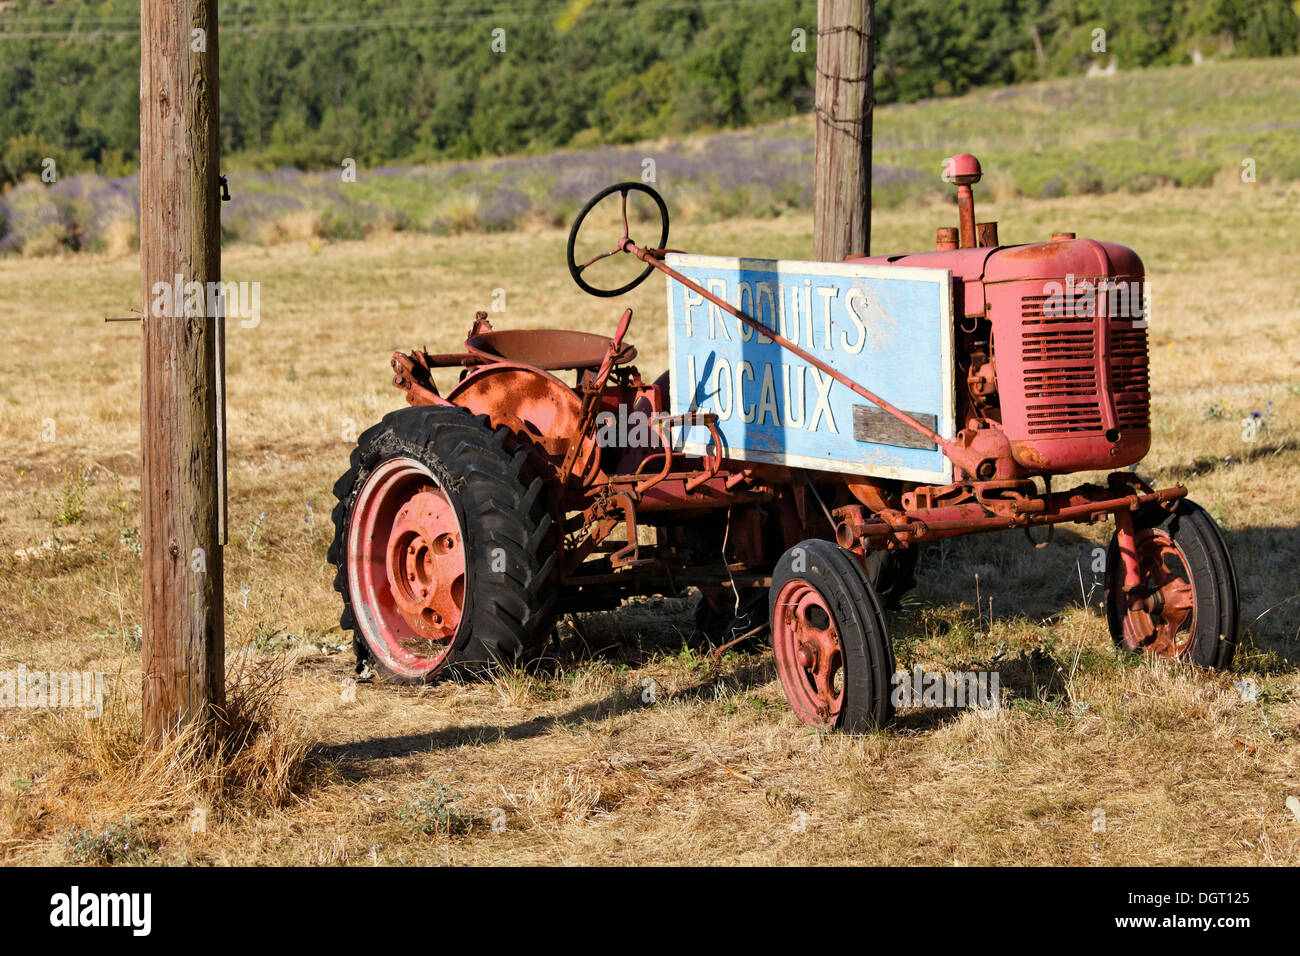 Le tracteur d'un agriculteur de la lavande, Sault, Apt, Provence, Vaucluse, France, Europe Banque D'Images